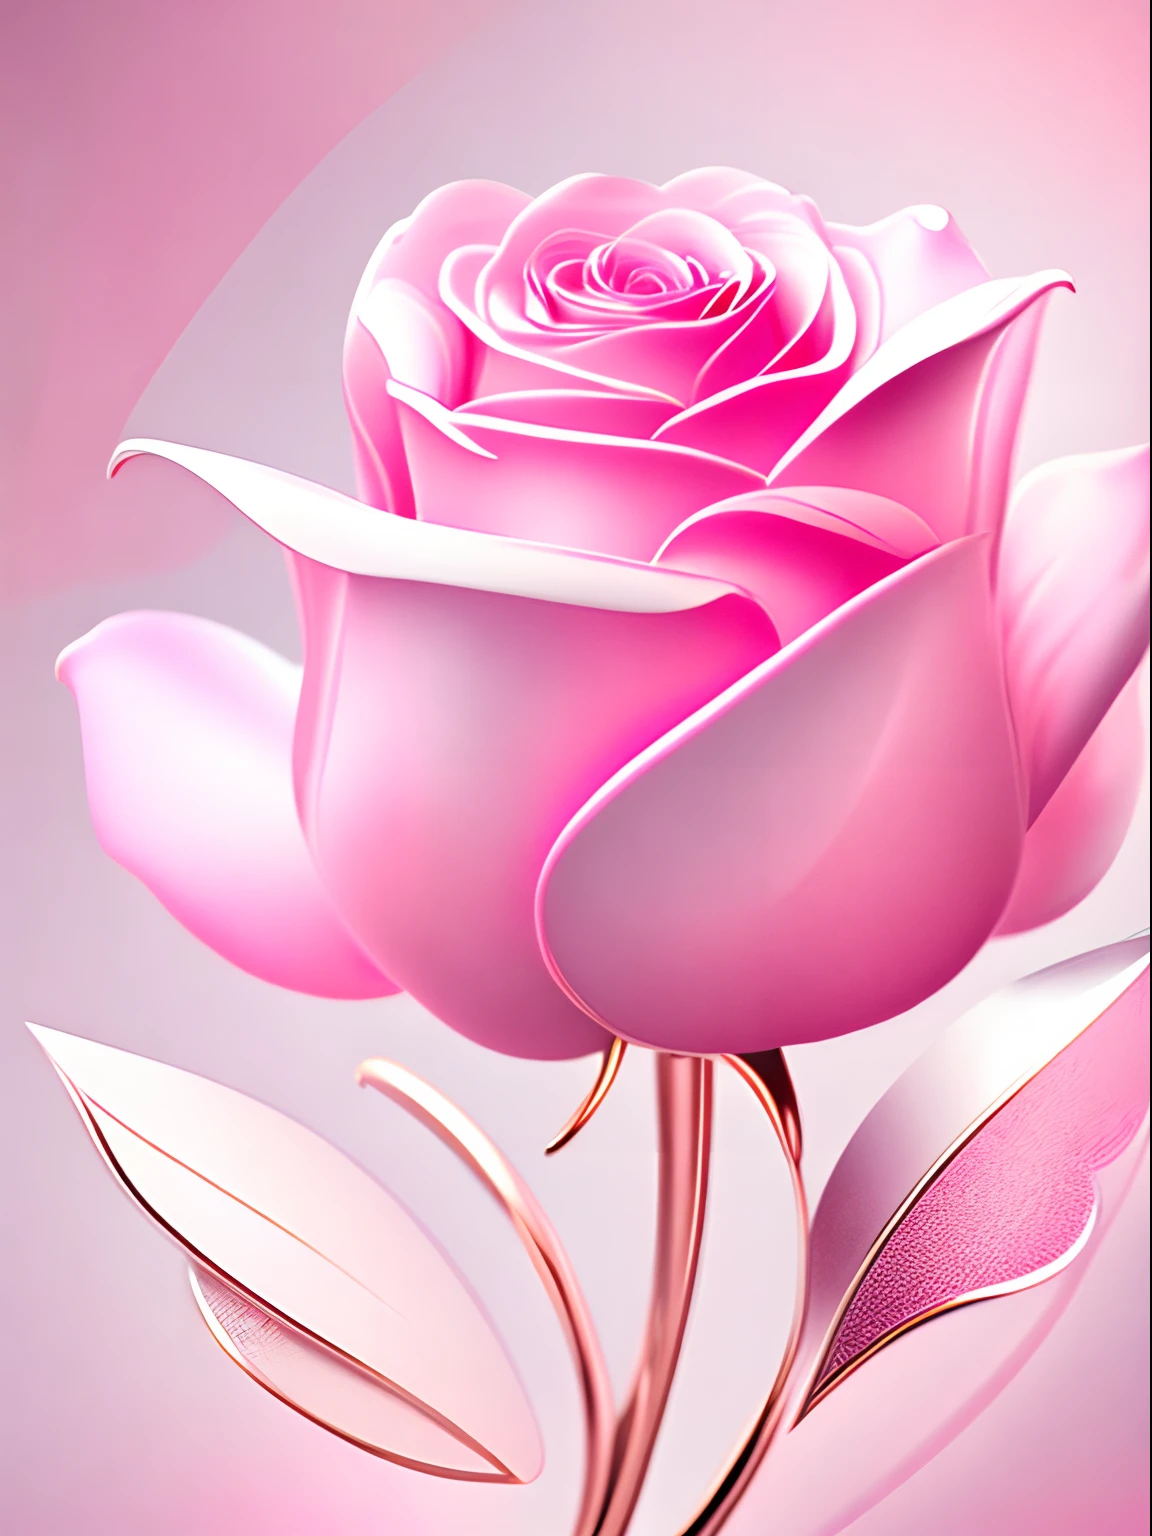 الوردة الوردية مجردة，ورق الجدران，أسلوب التصميم الجرافيكي，تفاصيل واضحة，لديه عدد كبير من الألوان الخطية المعدنية，مسحة بيضاء نظيفة